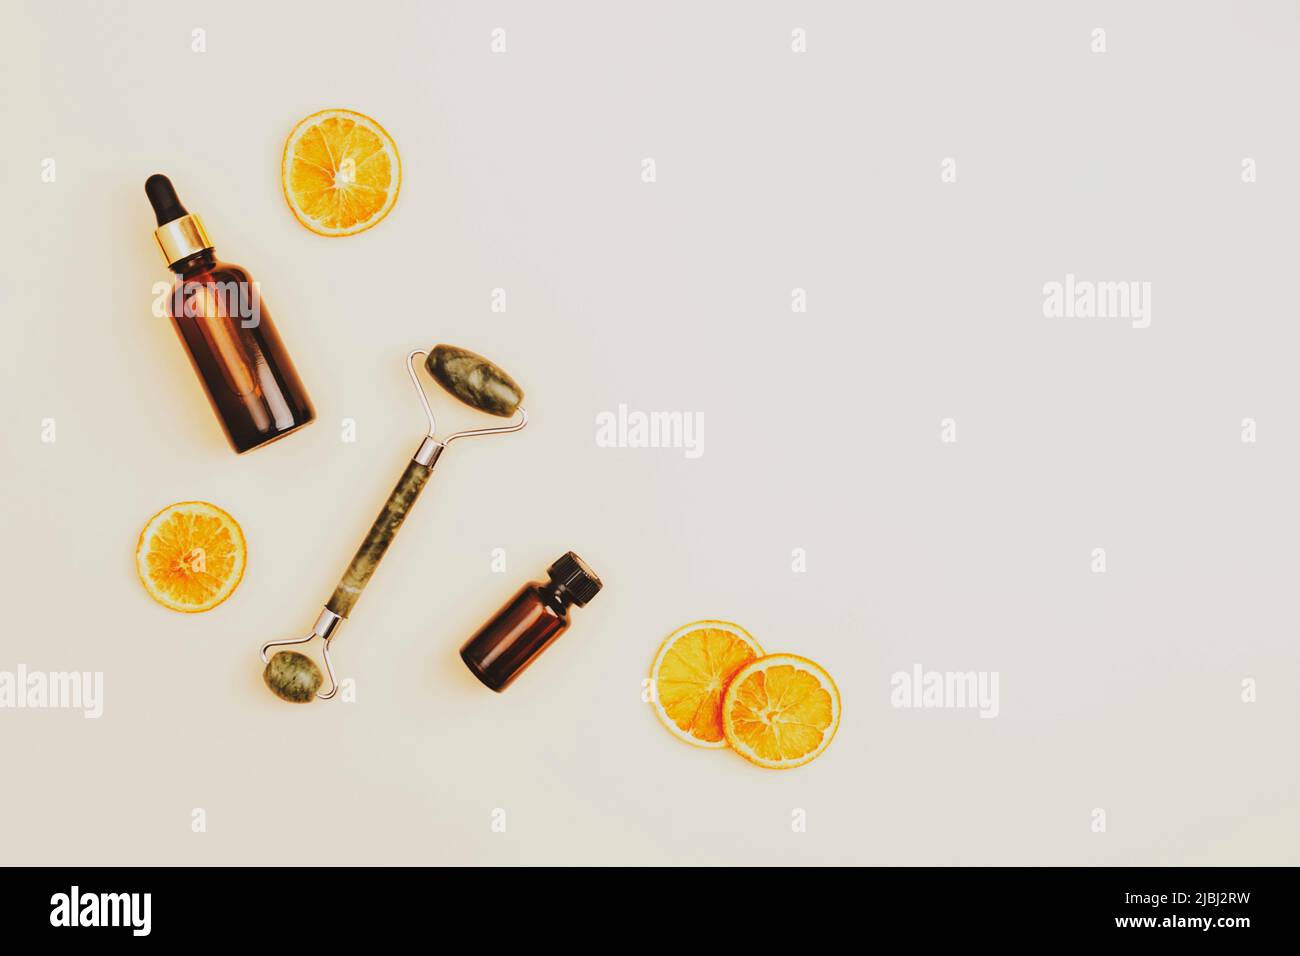 Accessoires cosmétiques, outils pour le traitement de beauté cosmétique anti-âge sur fond beige neutre avec tranches d'orange séchées. Vue de dessus, Flat lay, copie sp Banque D'Images